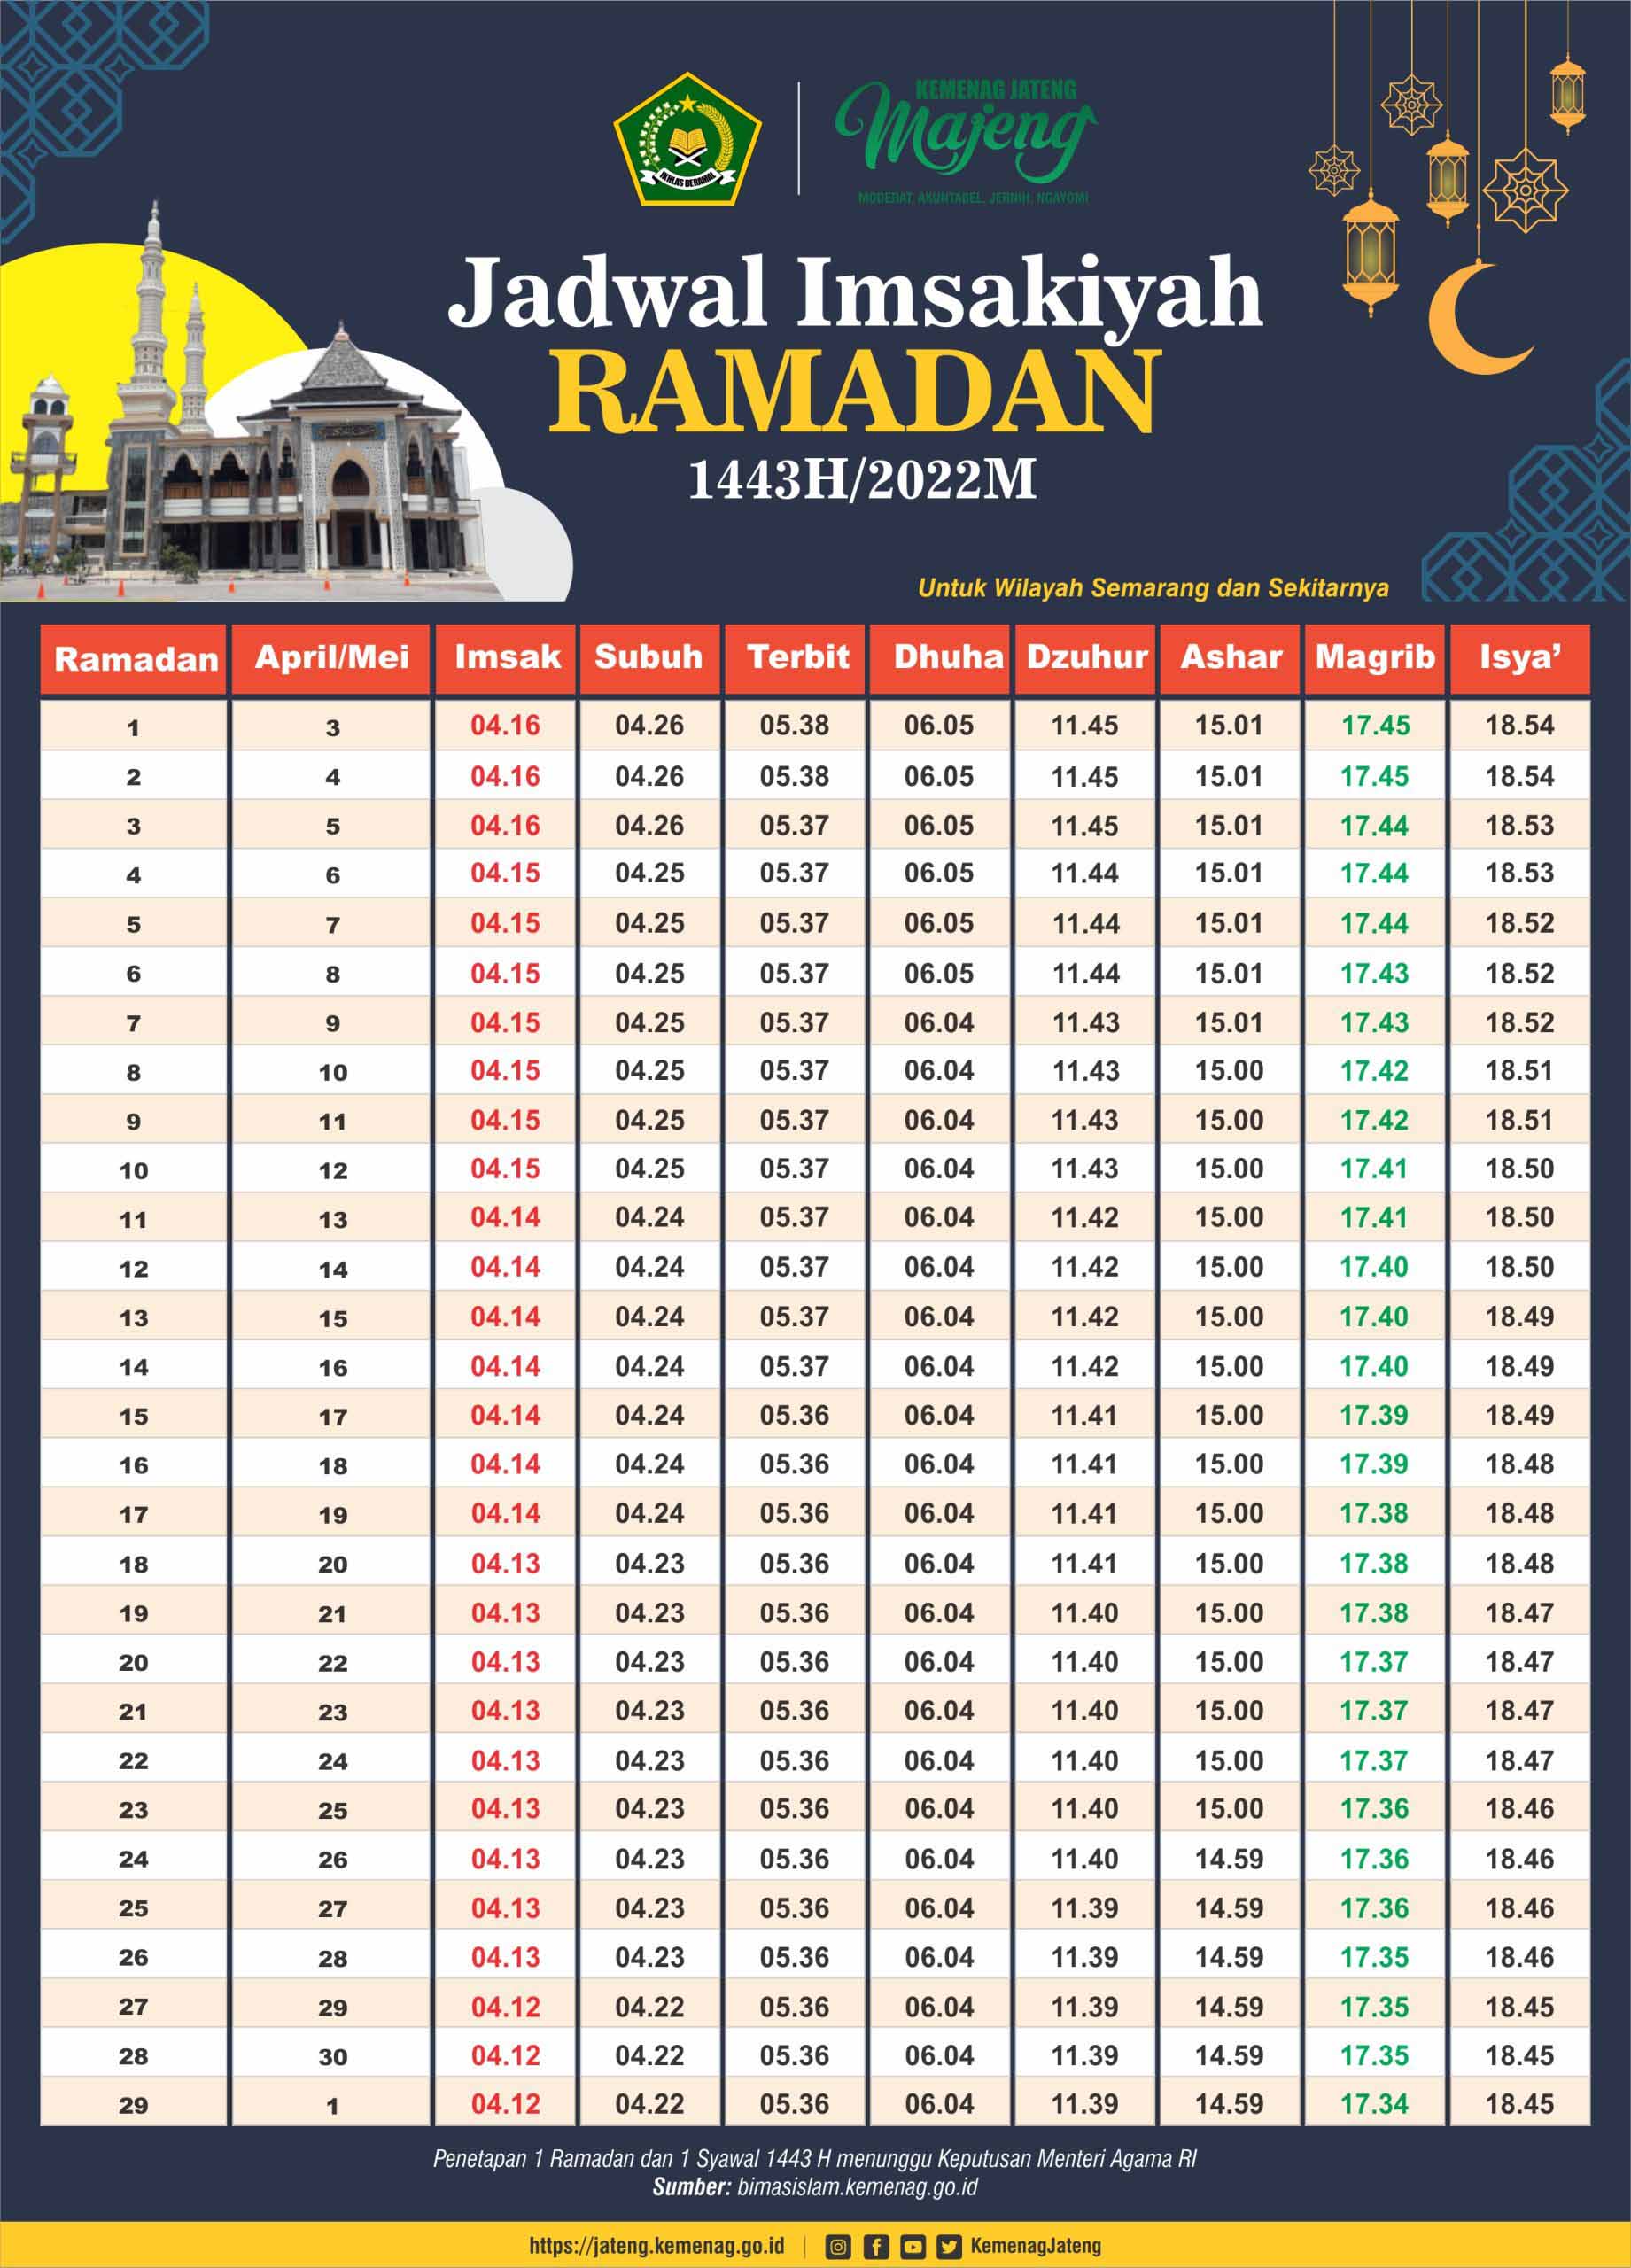 Jadwal imsakiyah ramadhan 2022